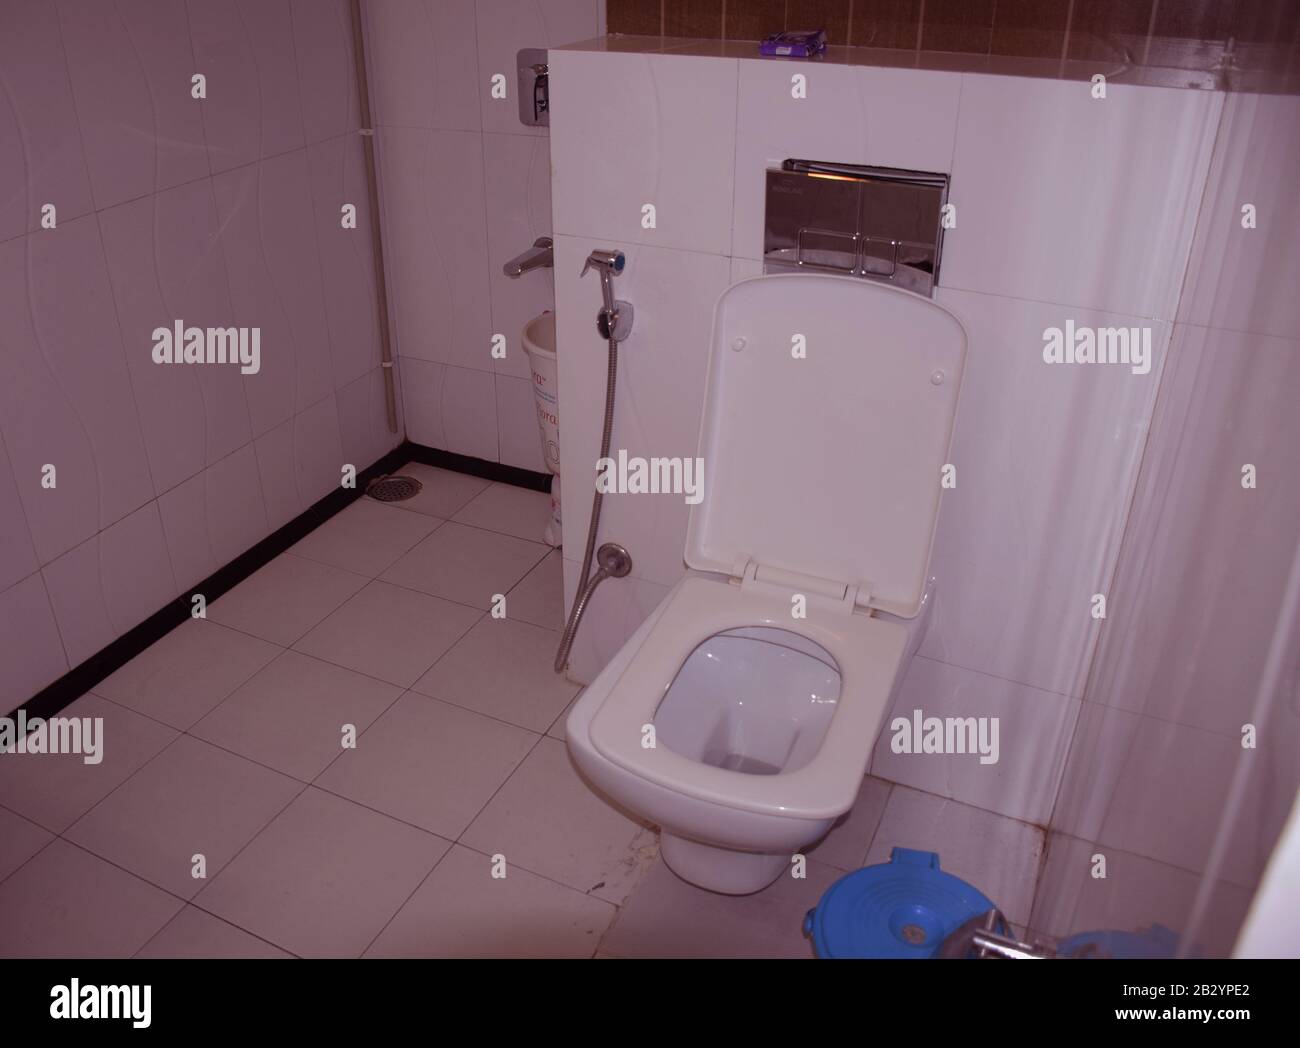 Ein wc-Kommode eines Hotels - Waschraum - Toilette - indisches Hotelloo Stockfoto